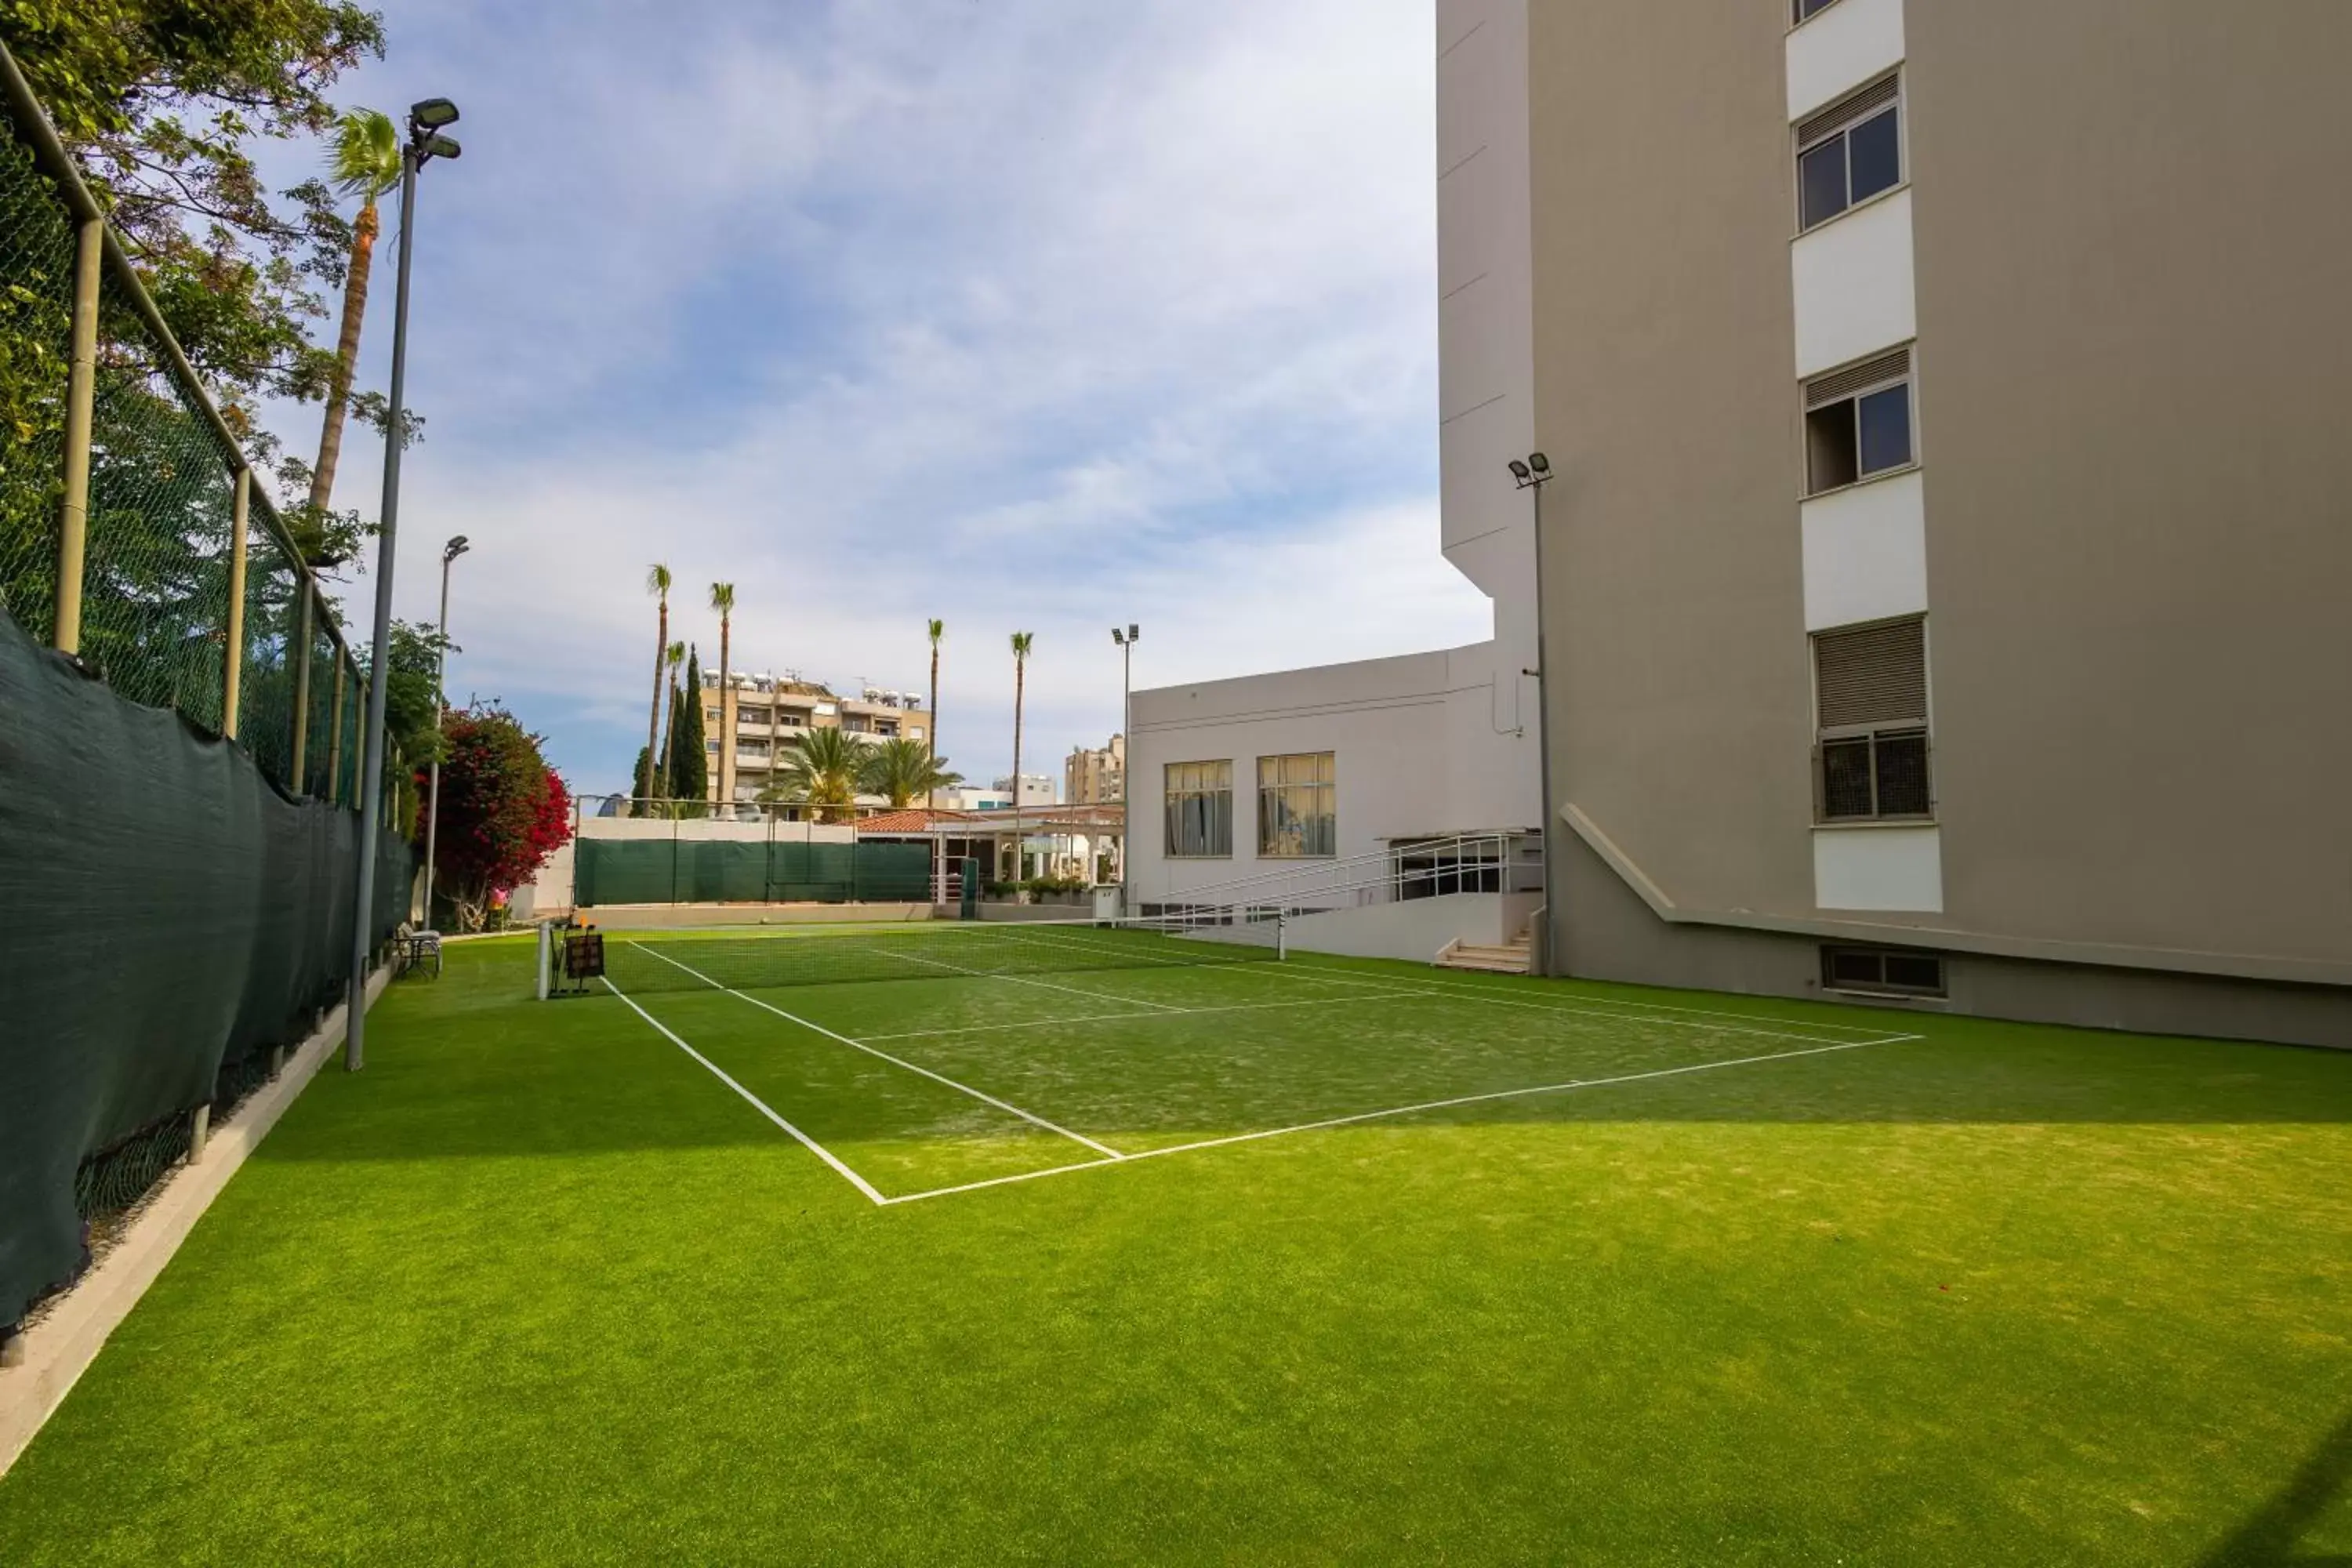 Tennis court, Other Activities in Ajax Hotel